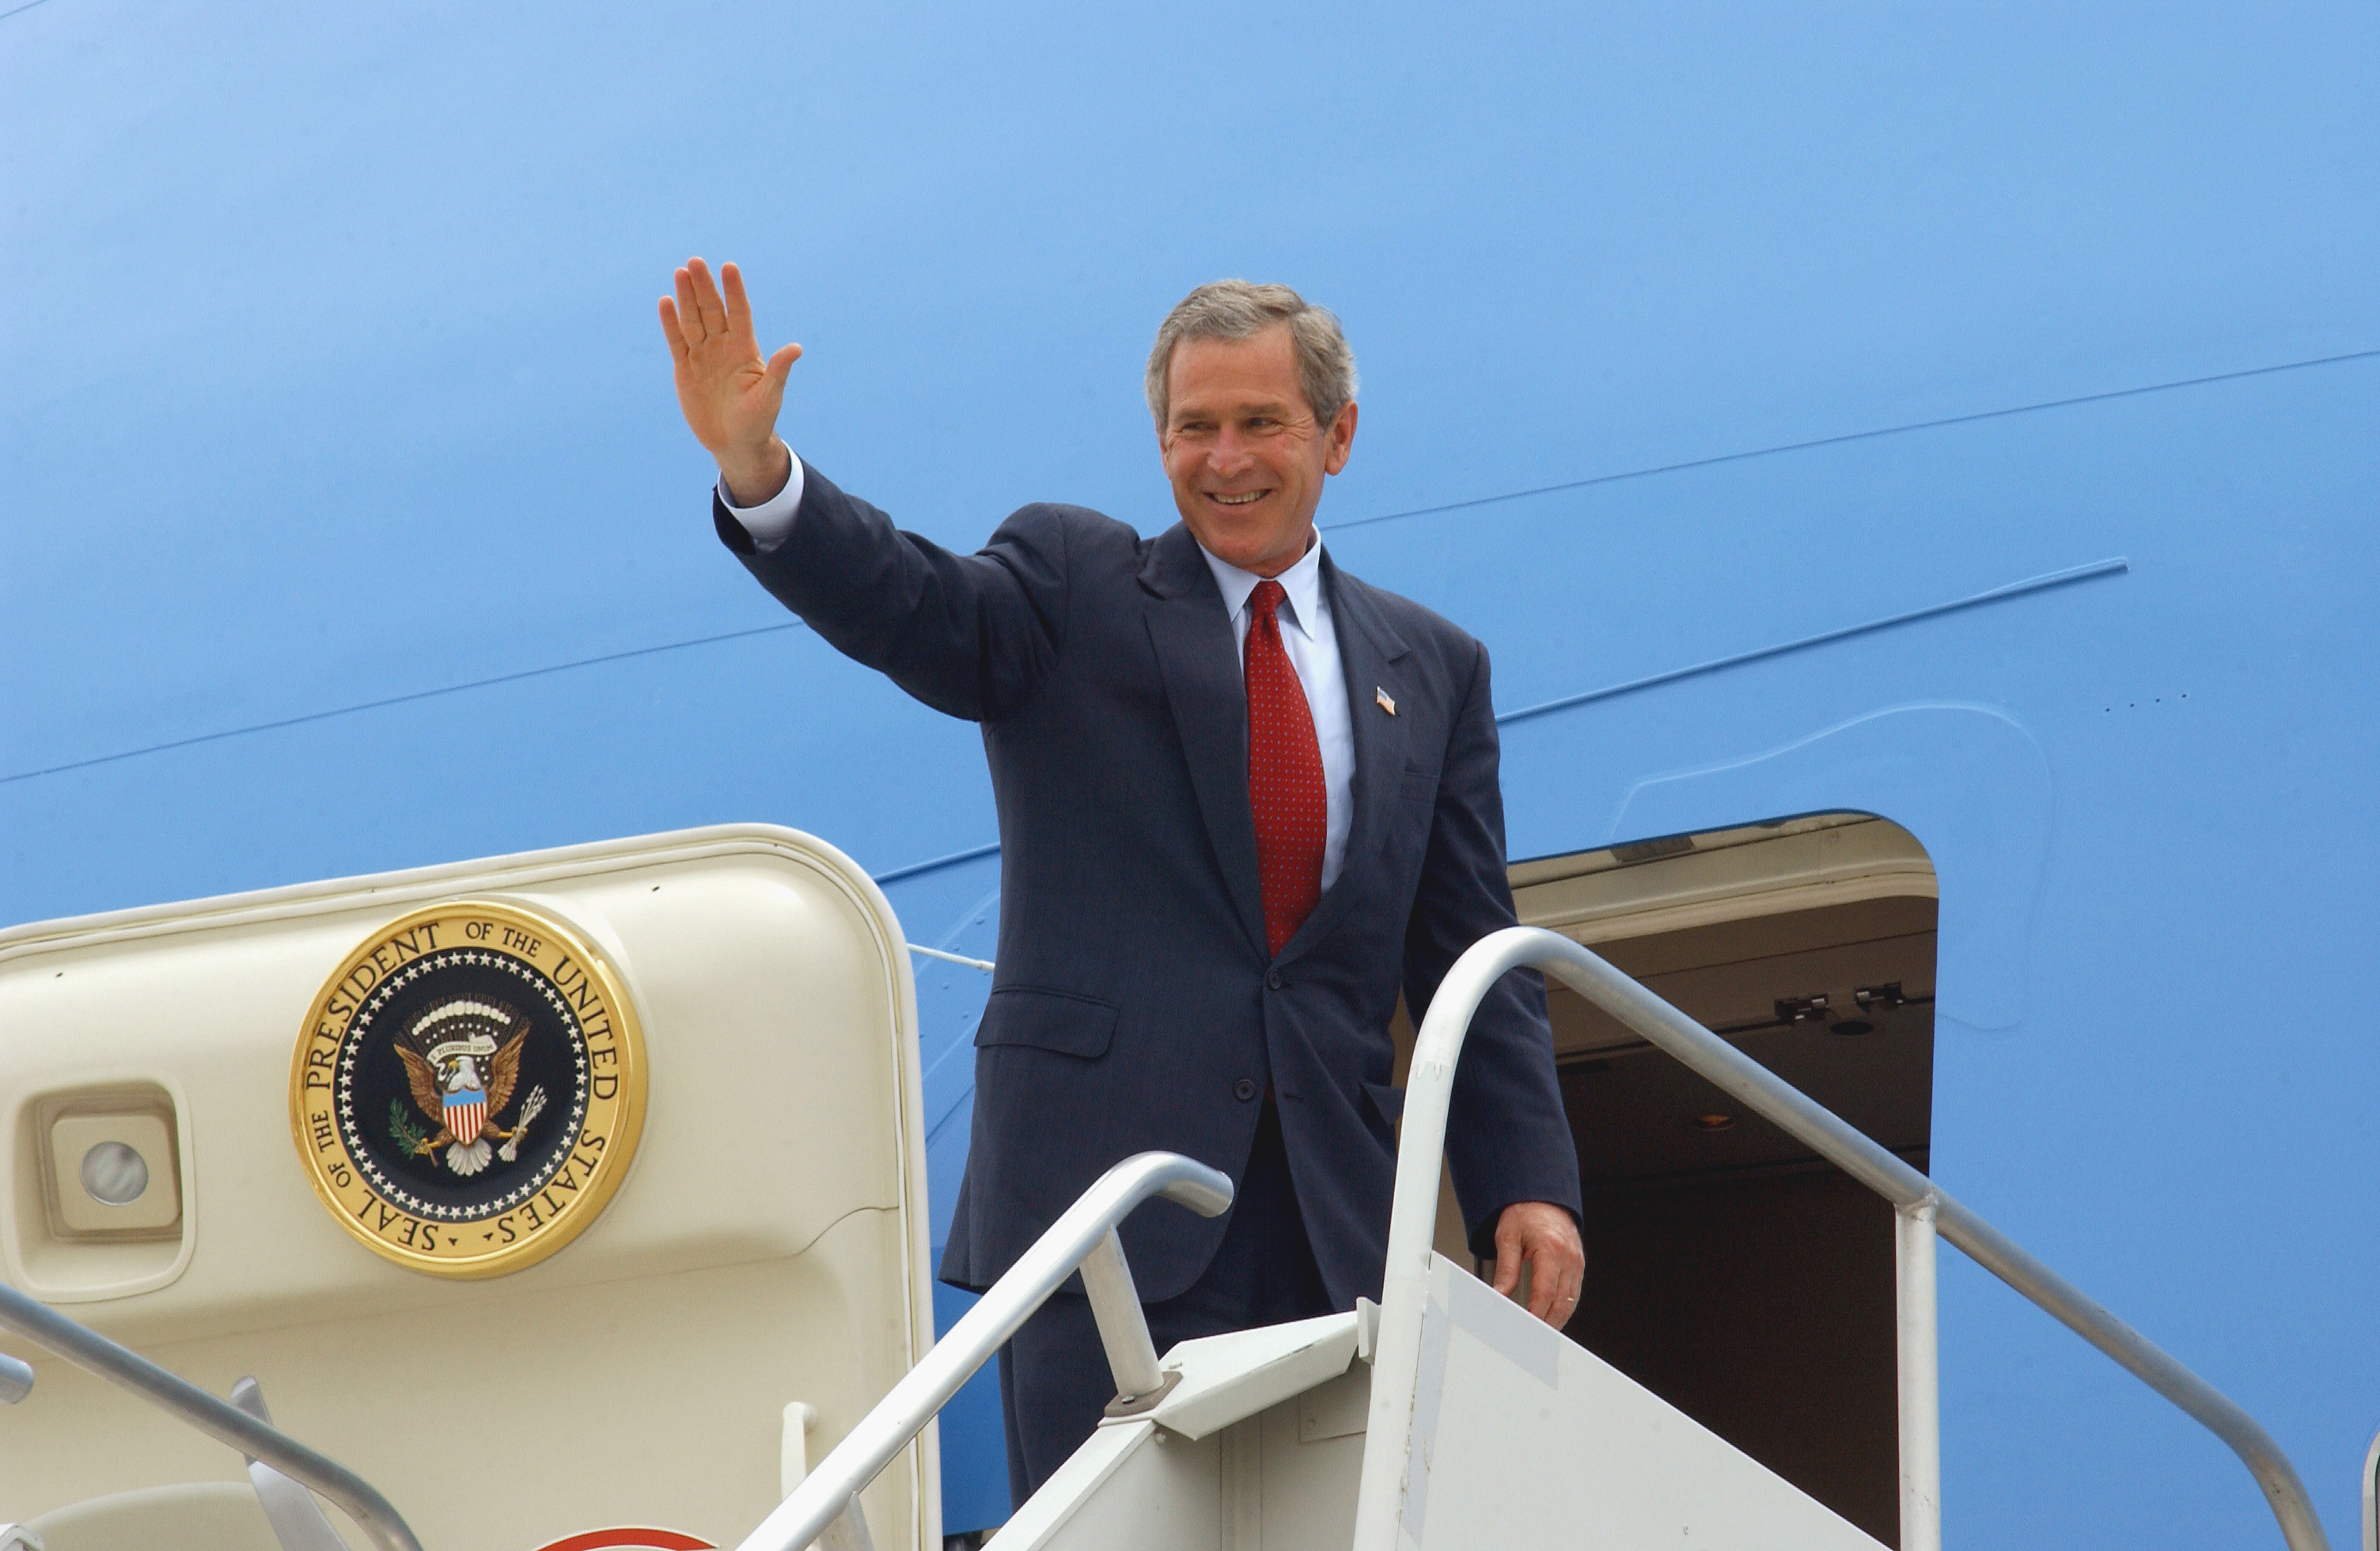 Thank You, President Bush